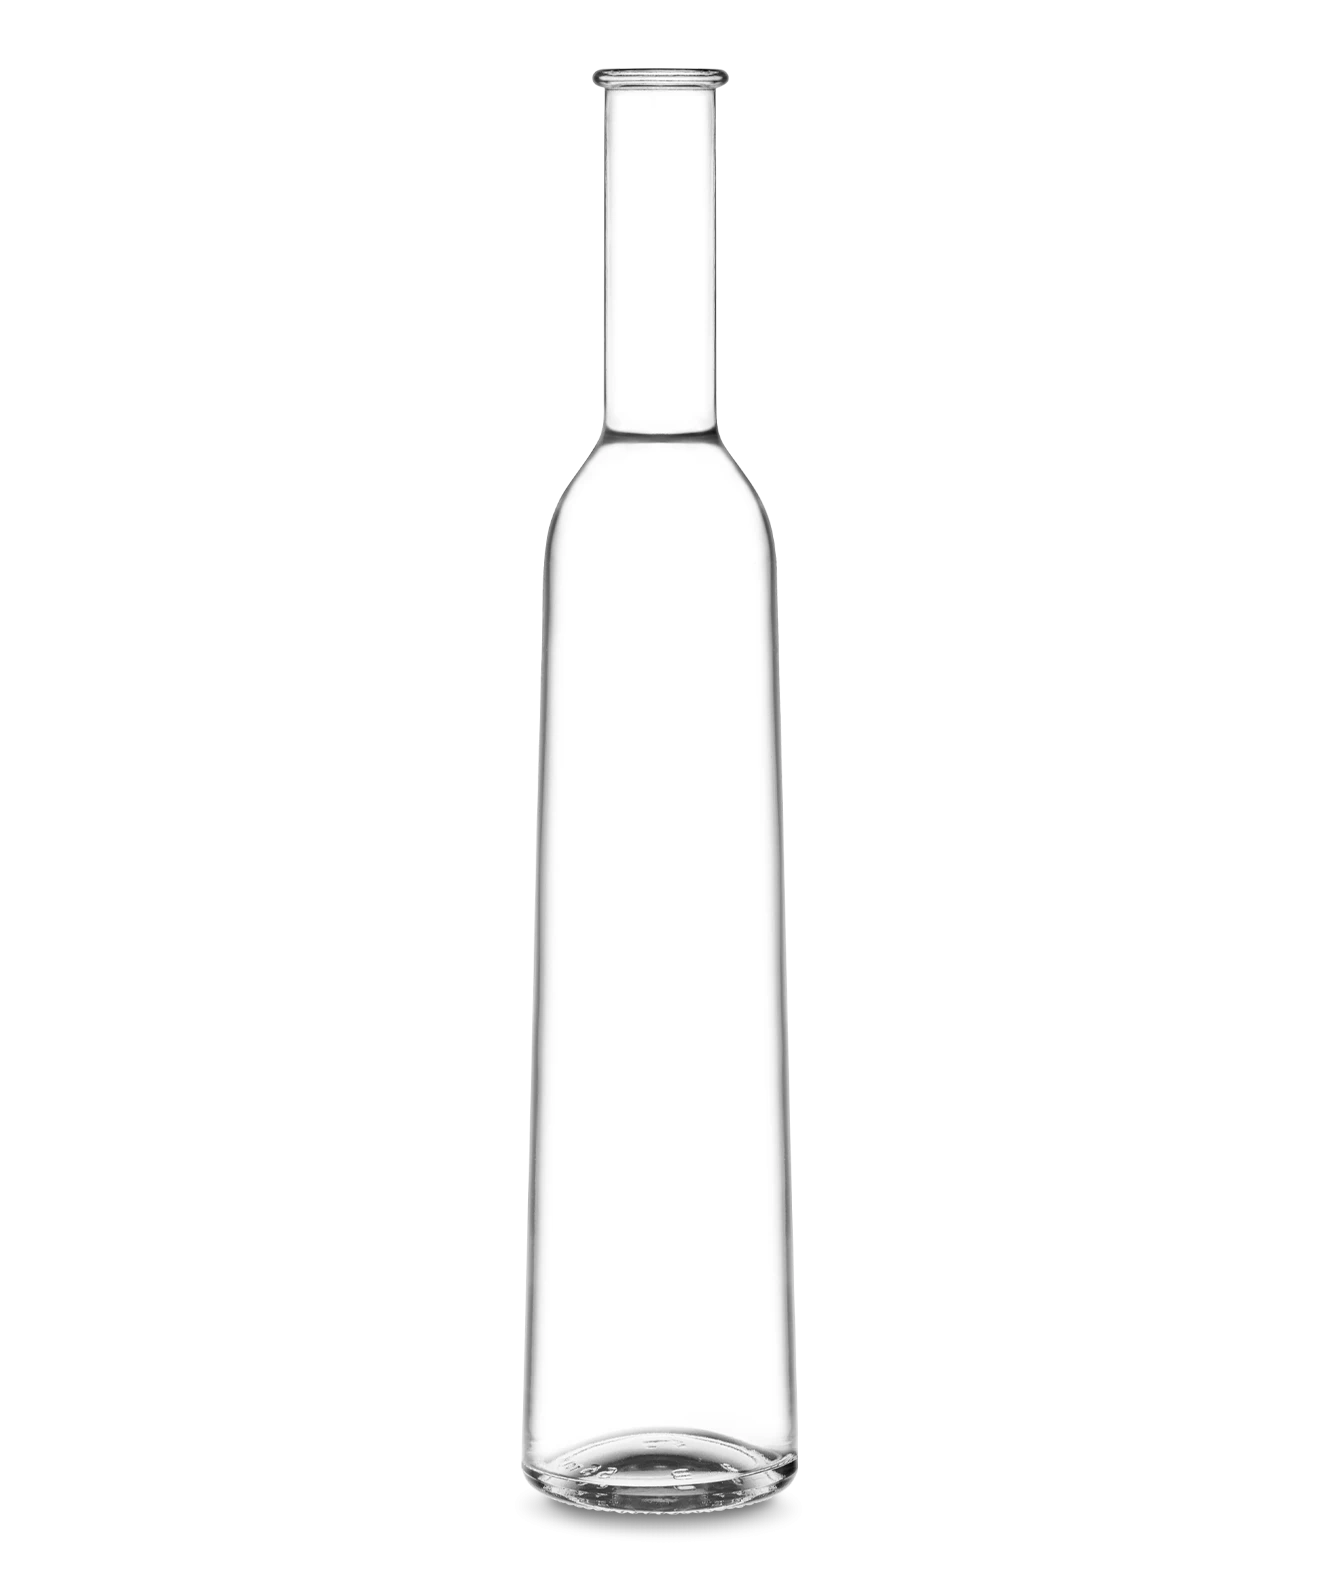 STEFANIA TONDA Archive Botella para bebidas alcoholicas Vetroelite View 1